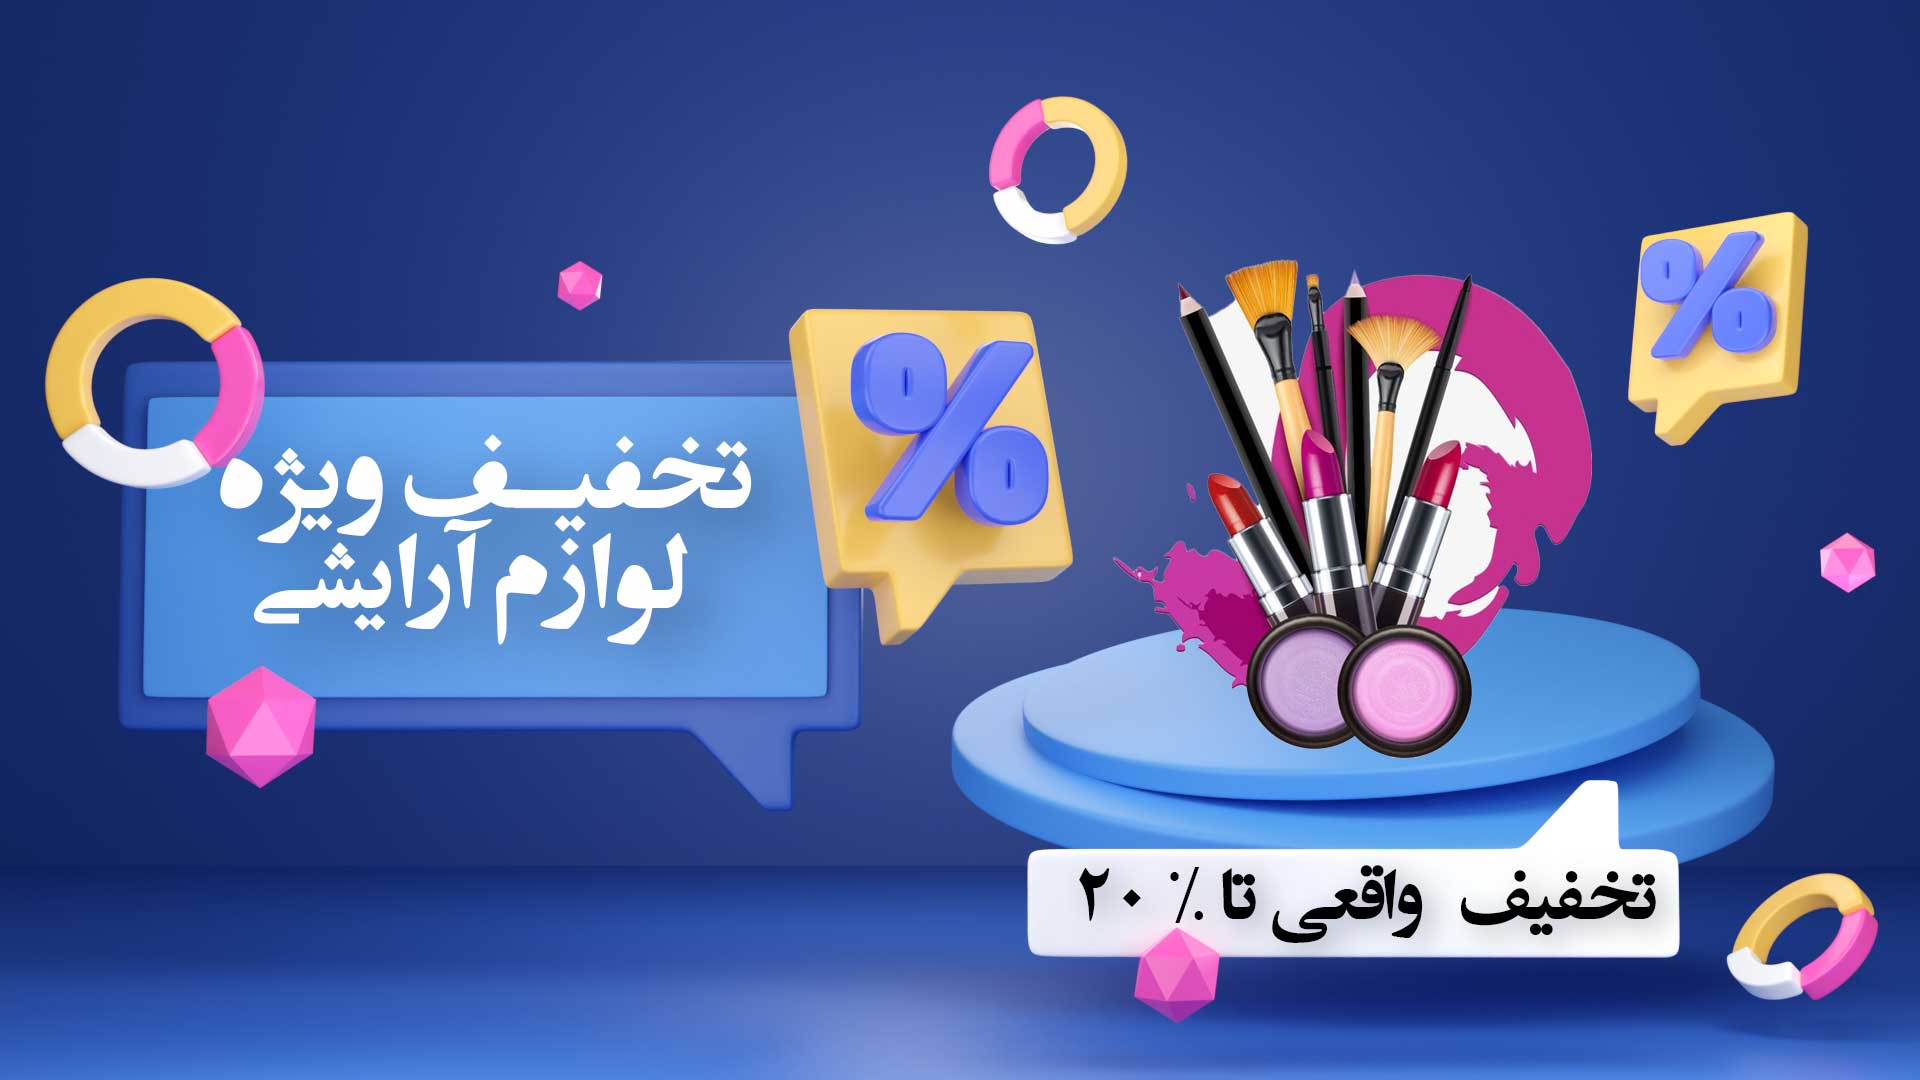 جشنواره فروش ویژه بلک فرایدی حنارا